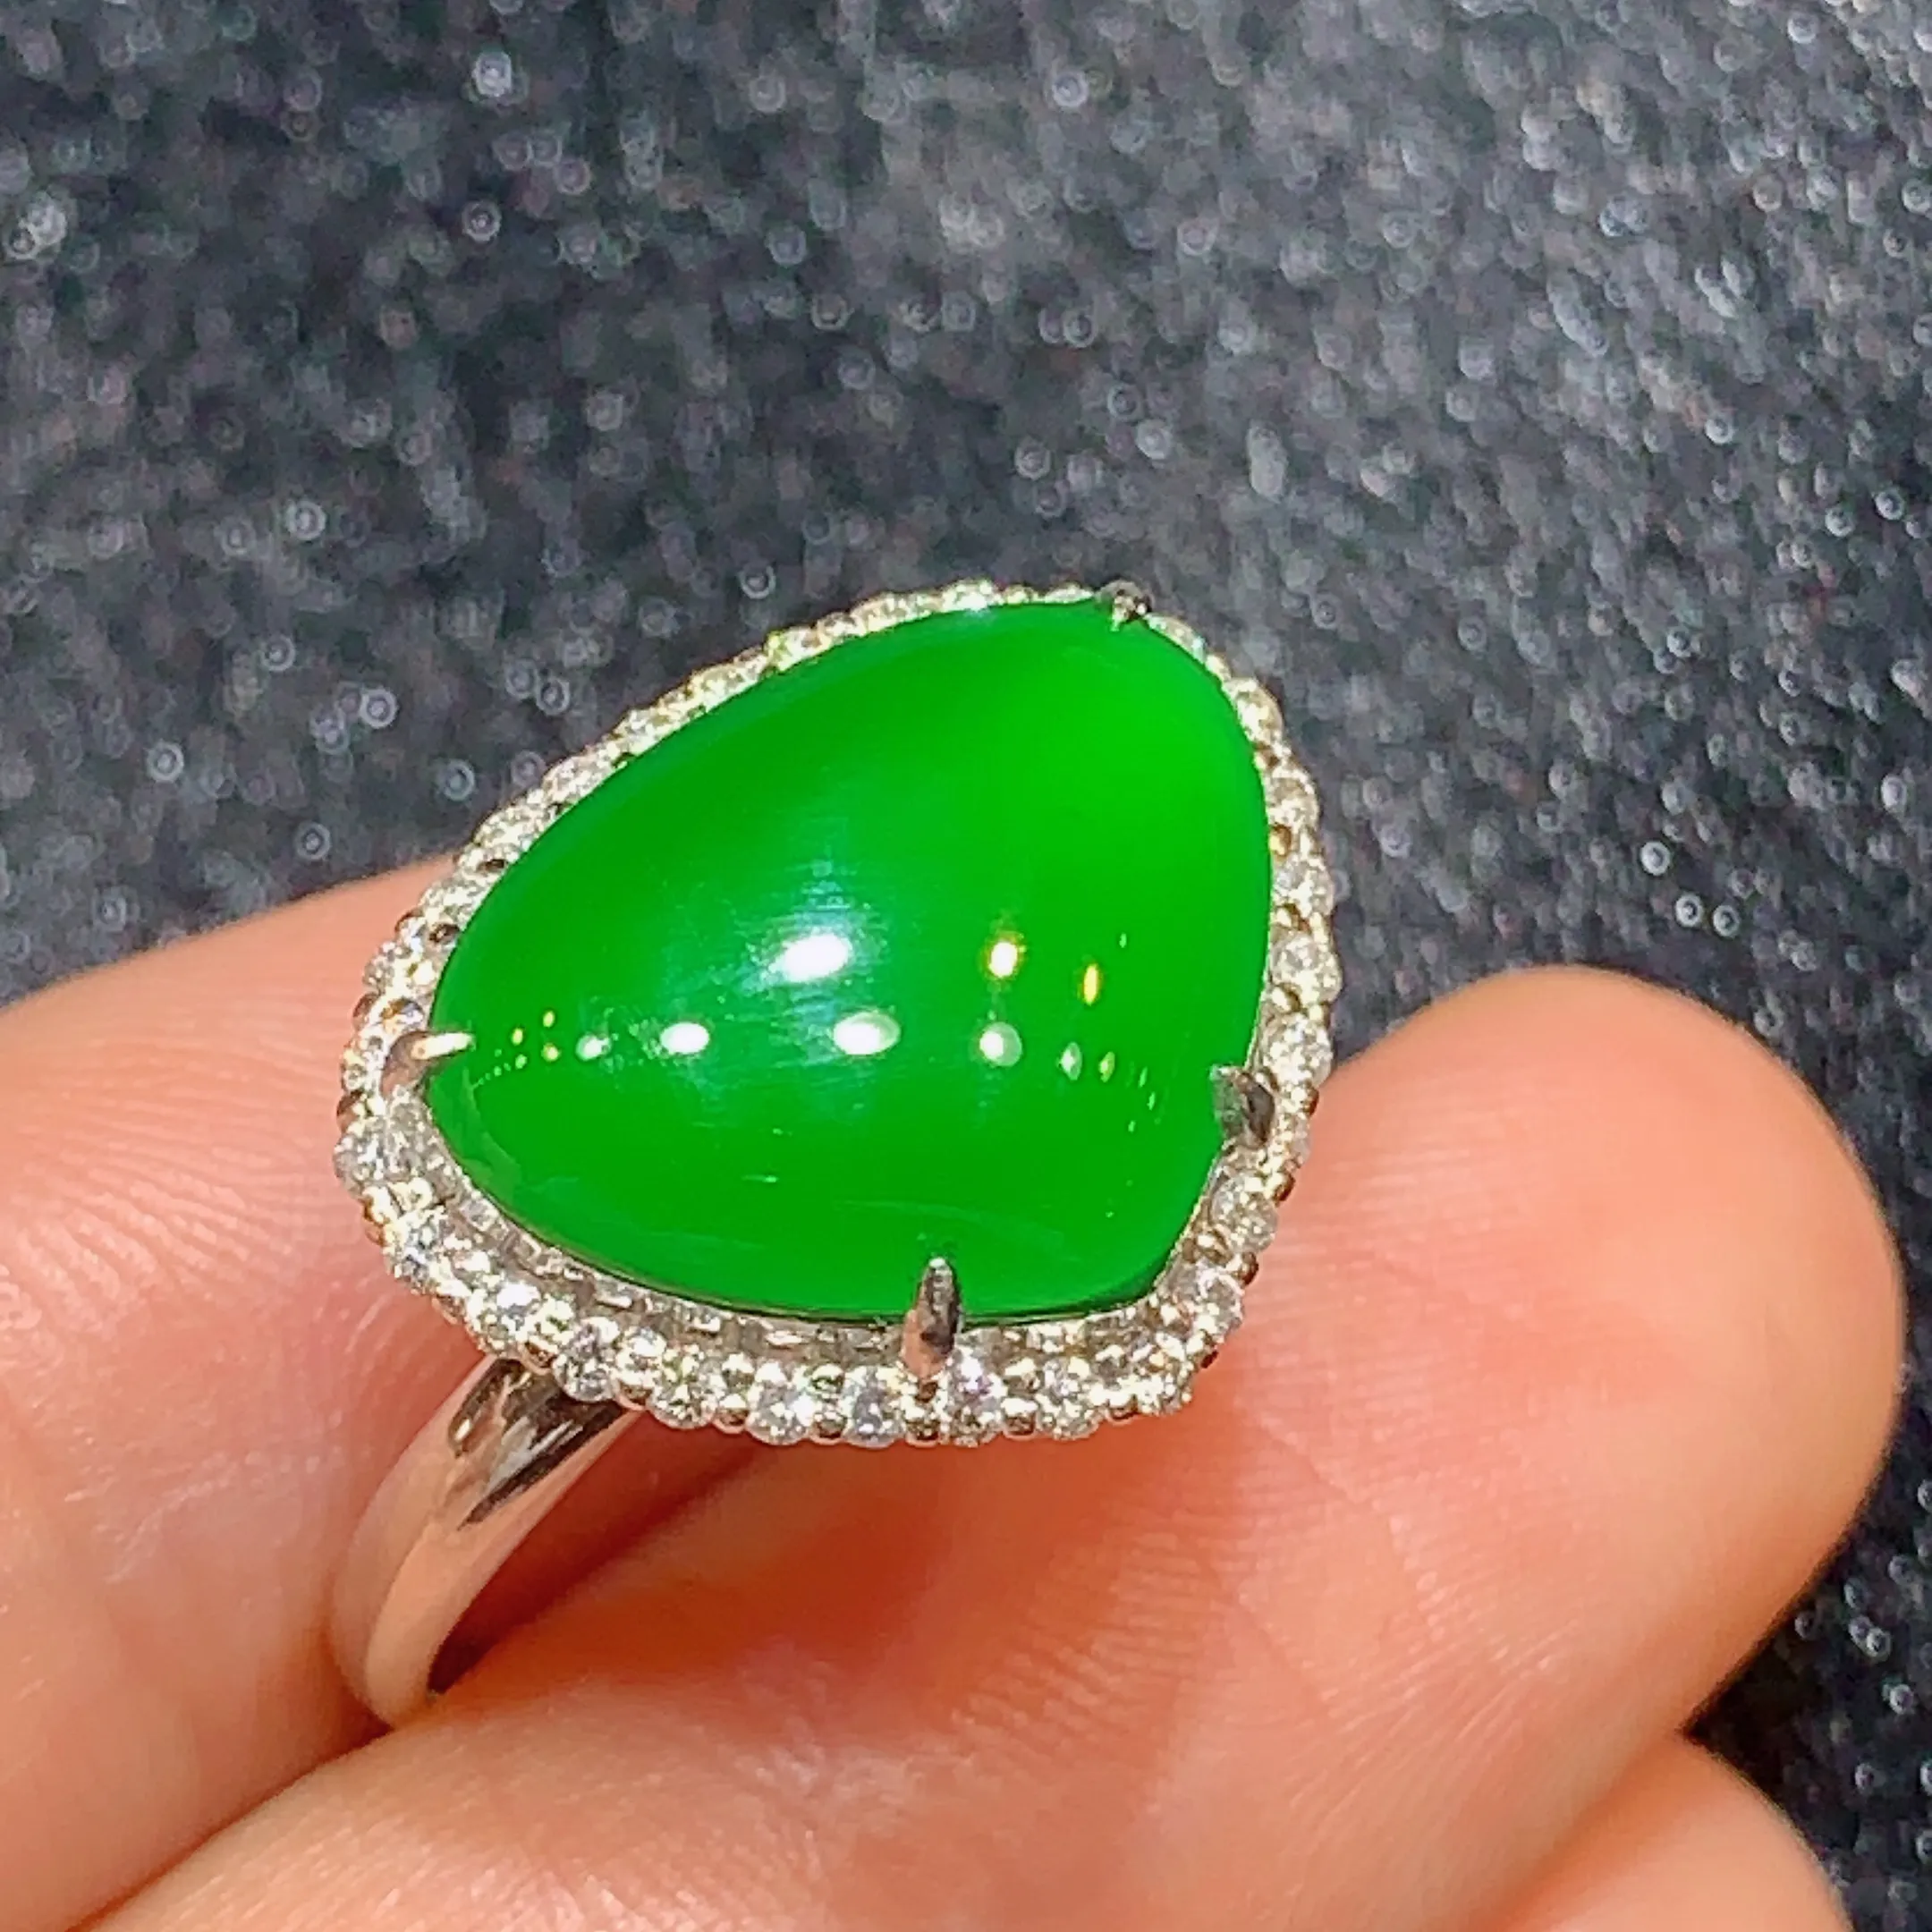 18k金钻镶嵌满绿心形戒指 玉质细腻 色泽艳丽 款式新颖时尚高贵大气 圈口13 整体尺寸14*17.2*9